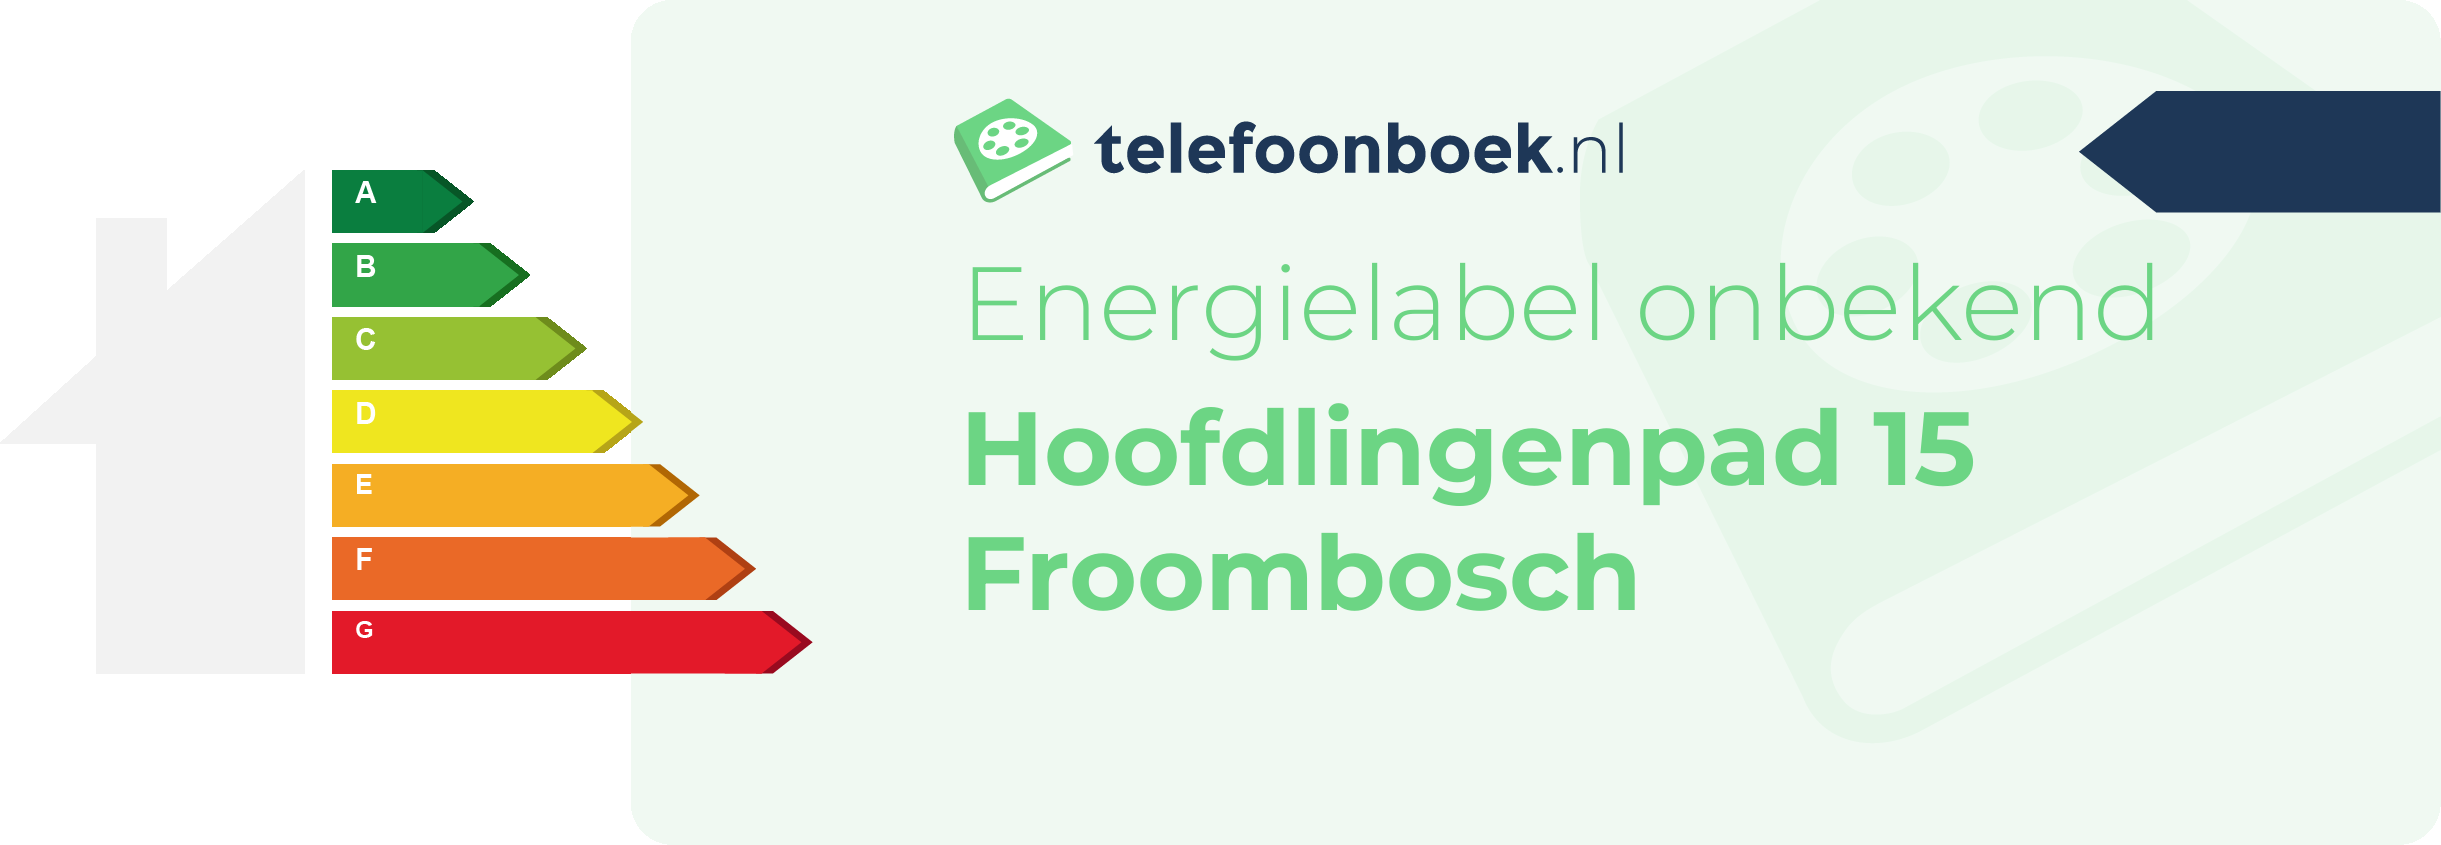 Energielabel Hoofdlingenpad 15 Froombosch